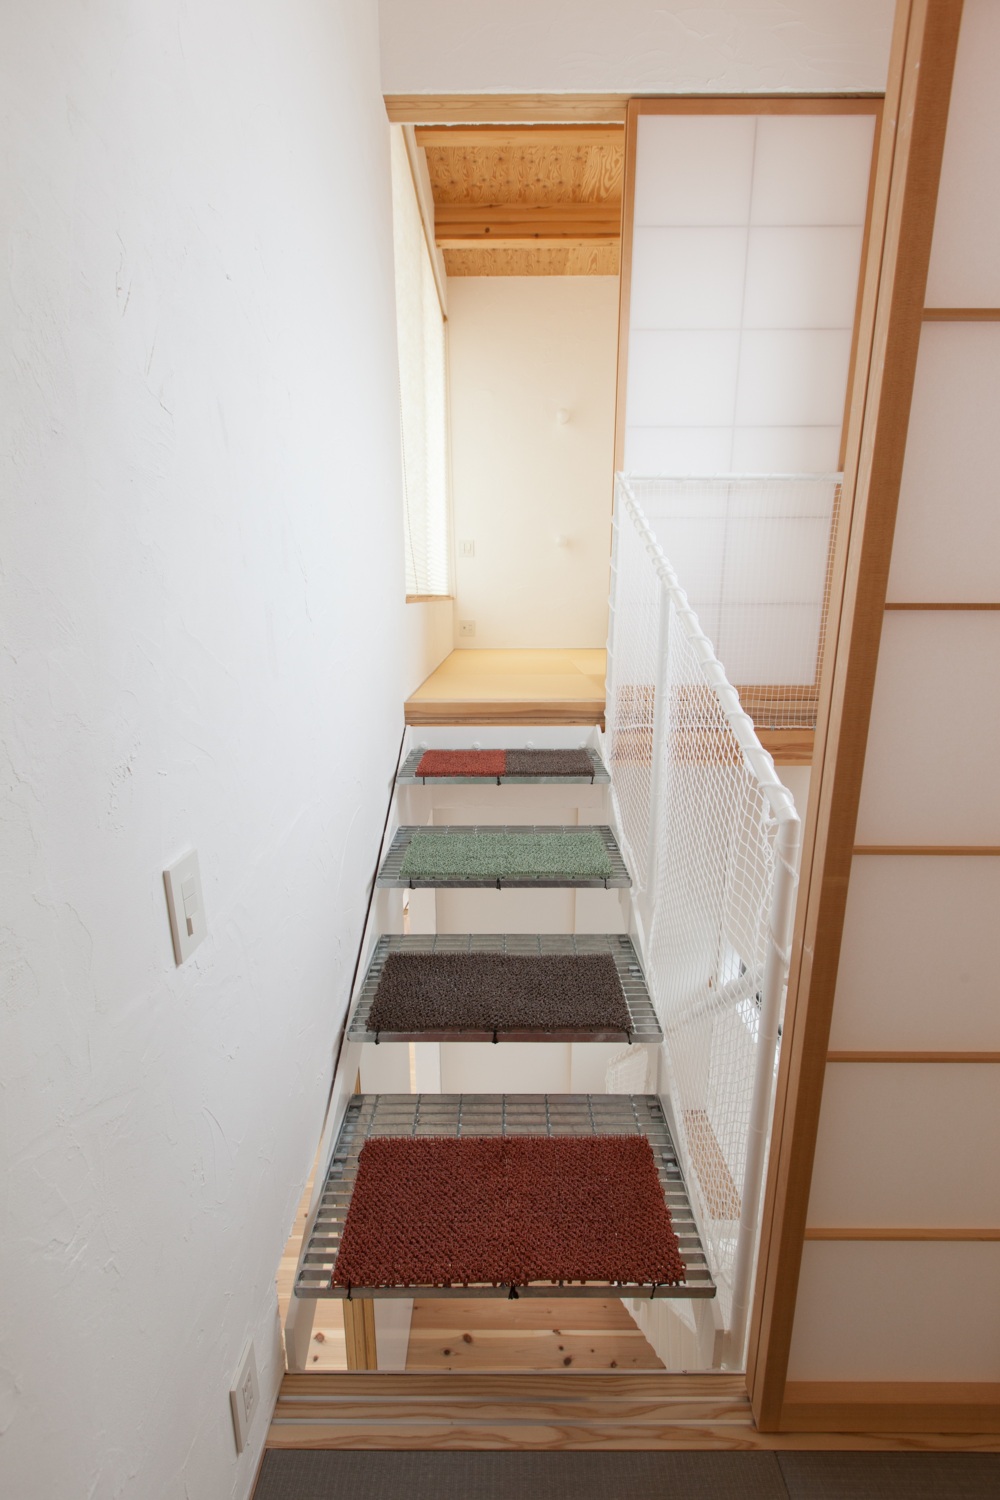 静岡県浜松市H邸階段中段から上段へ